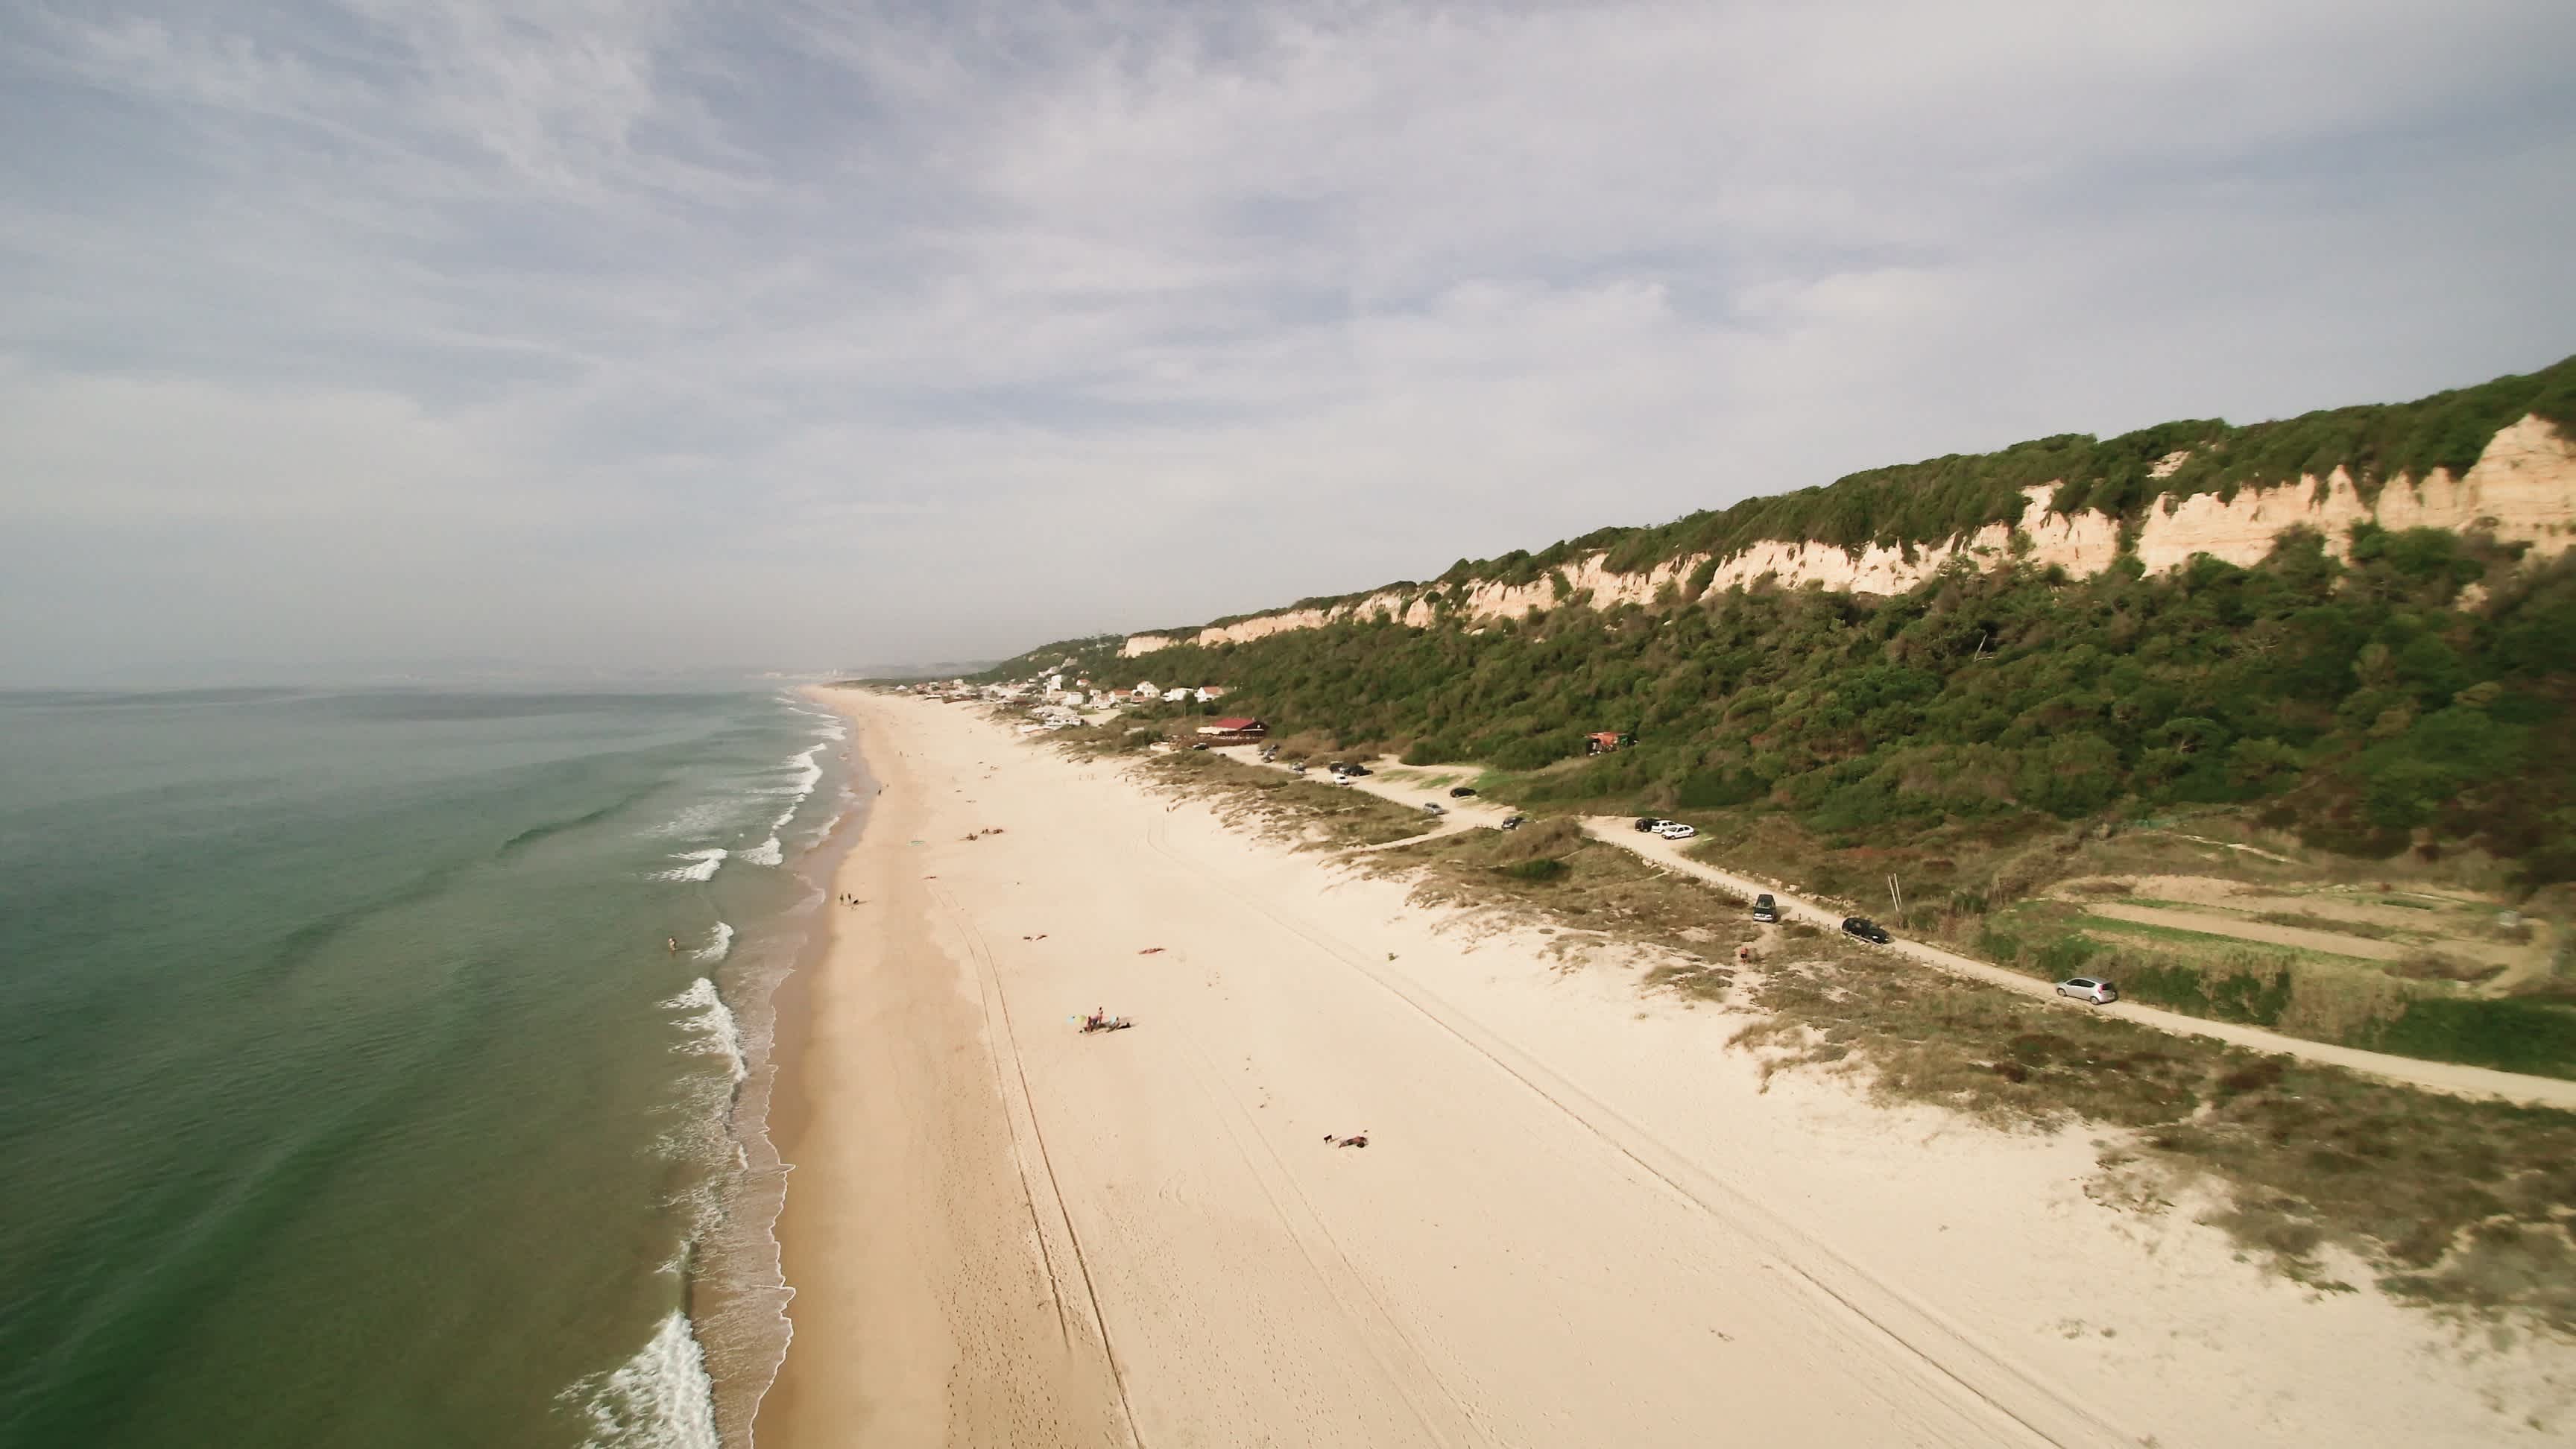 Der lange Sandstrand von Praia da Fonte da Telha, Portugal mit grünen Dünen bei bewölktem Wetter.